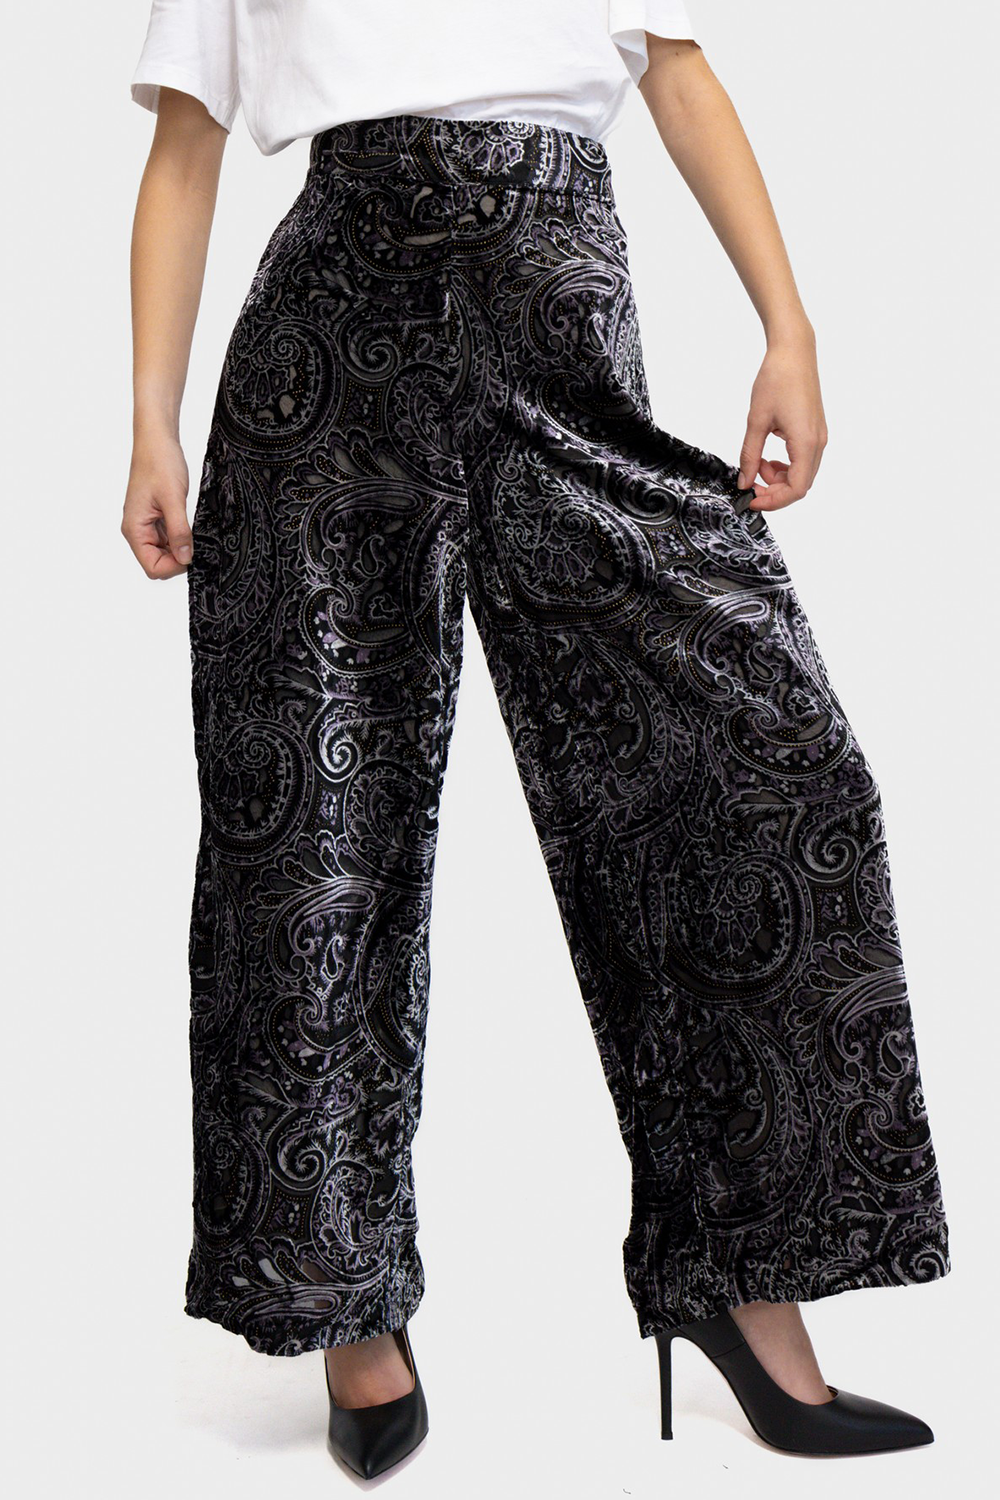 מכנסי פדלפון לנשים בצבע שחור RENE DHRHY Vendome online | ונדום .